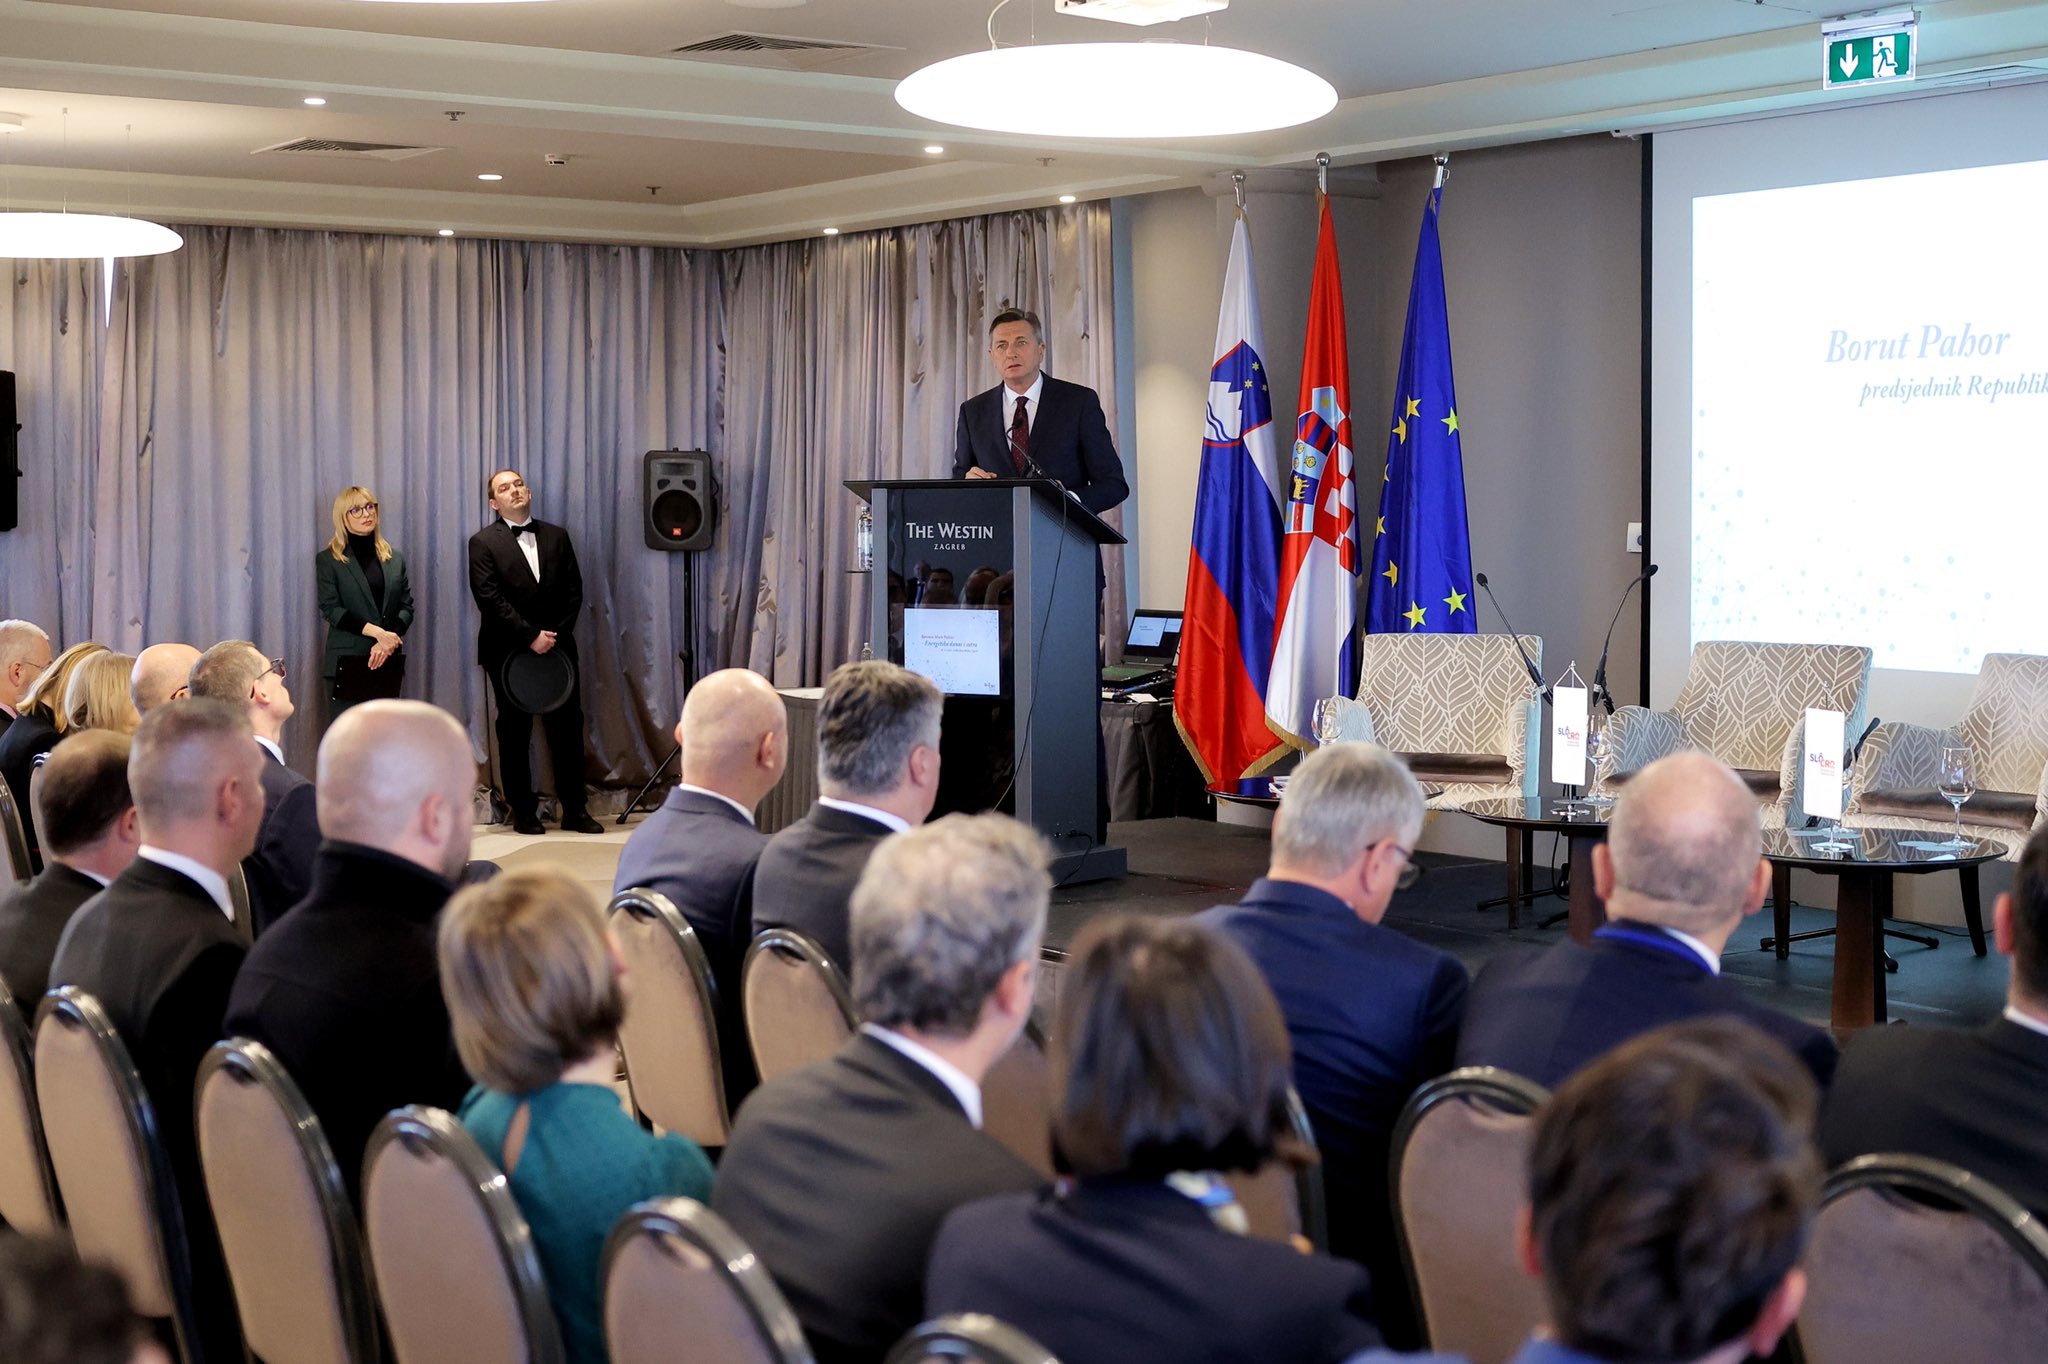 Pahor v Zagrebu: Gospodarstvo mora ostati odprto v svet